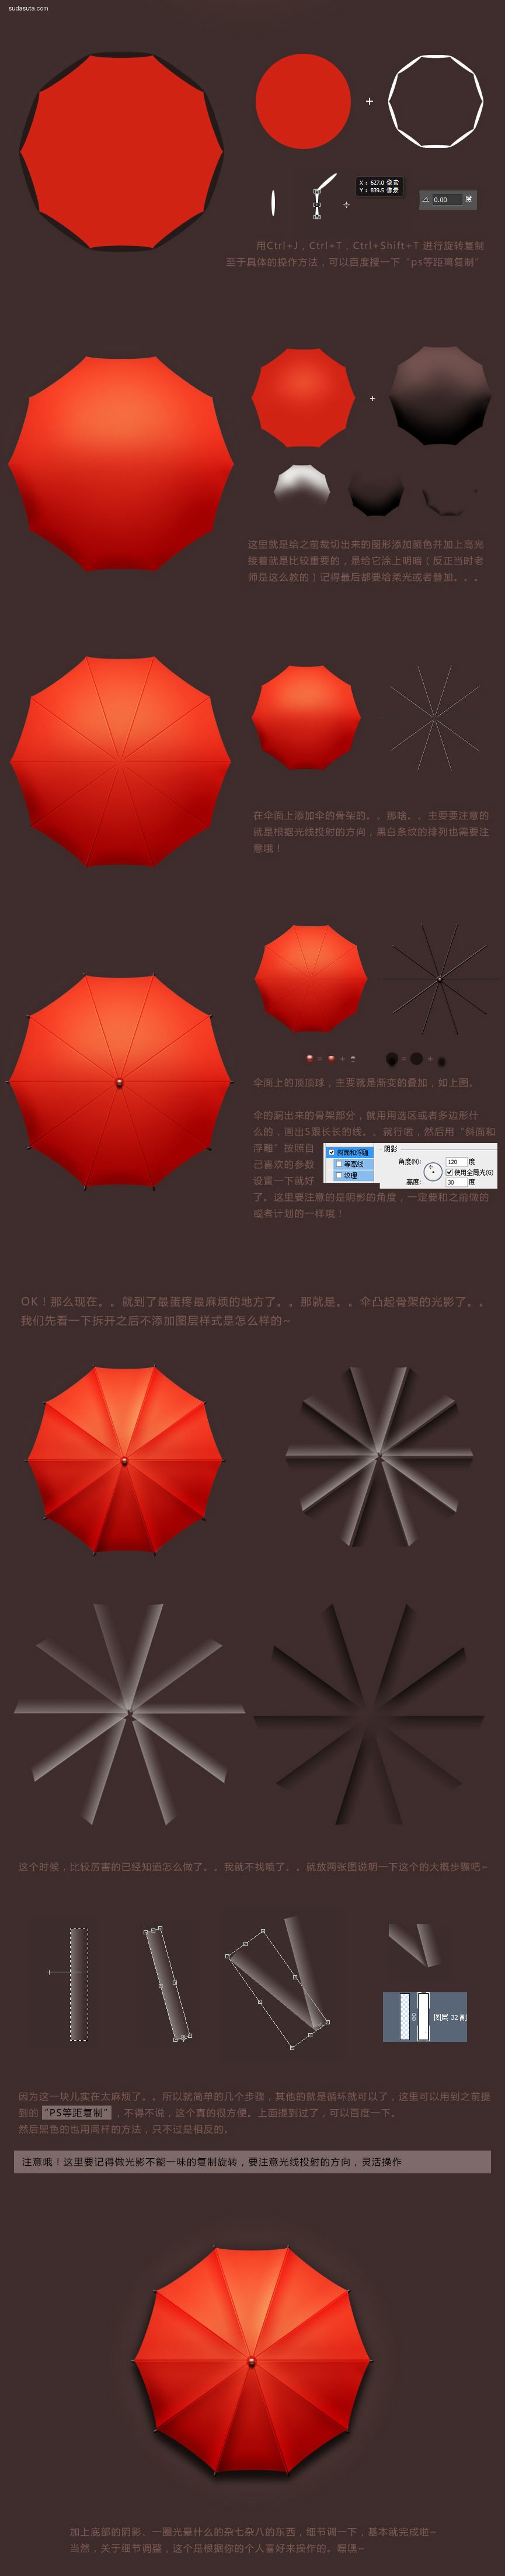 tut red umbrella (1)